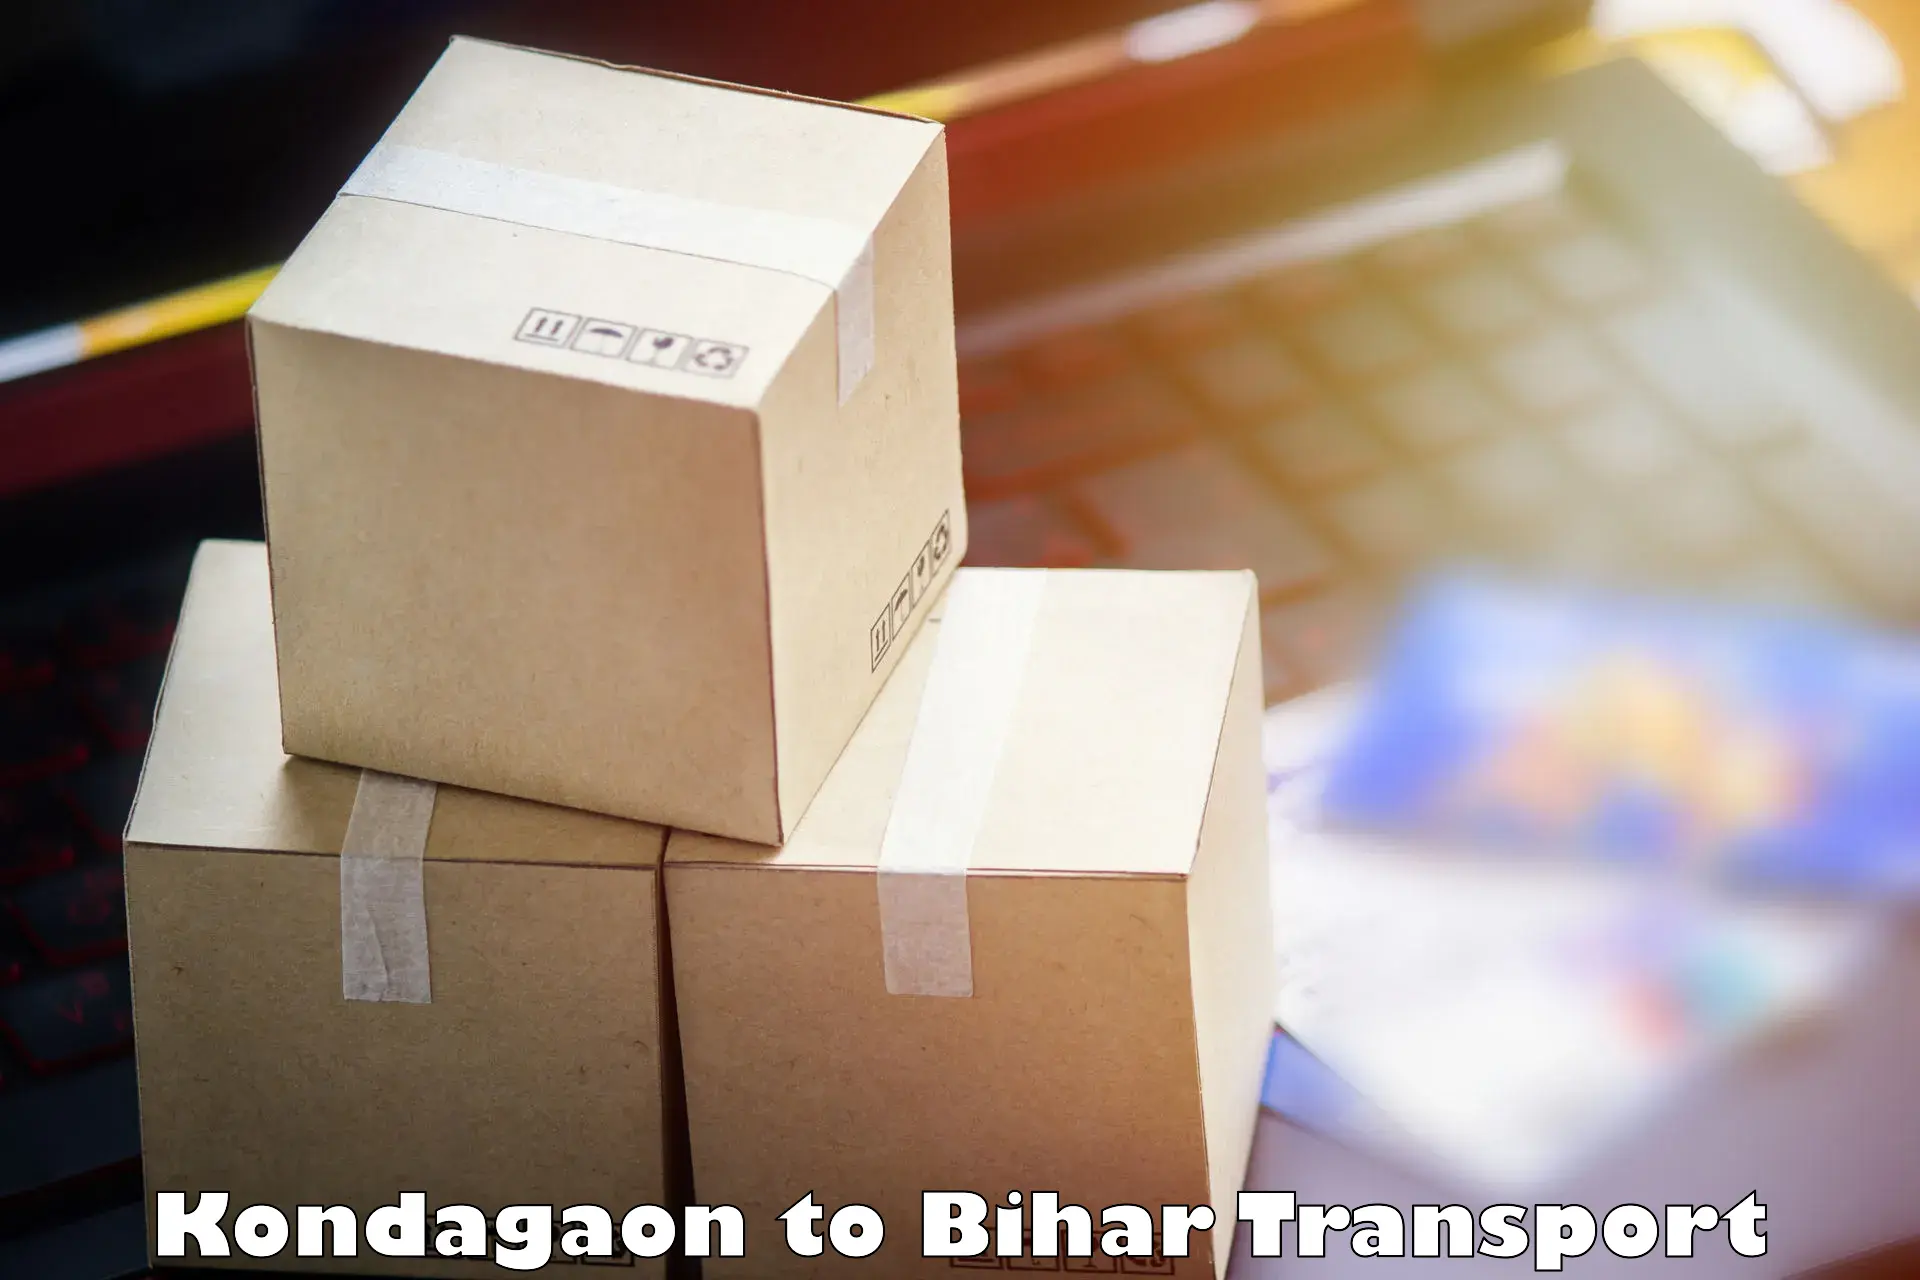 Shipping partner Kondagaon to Bihar